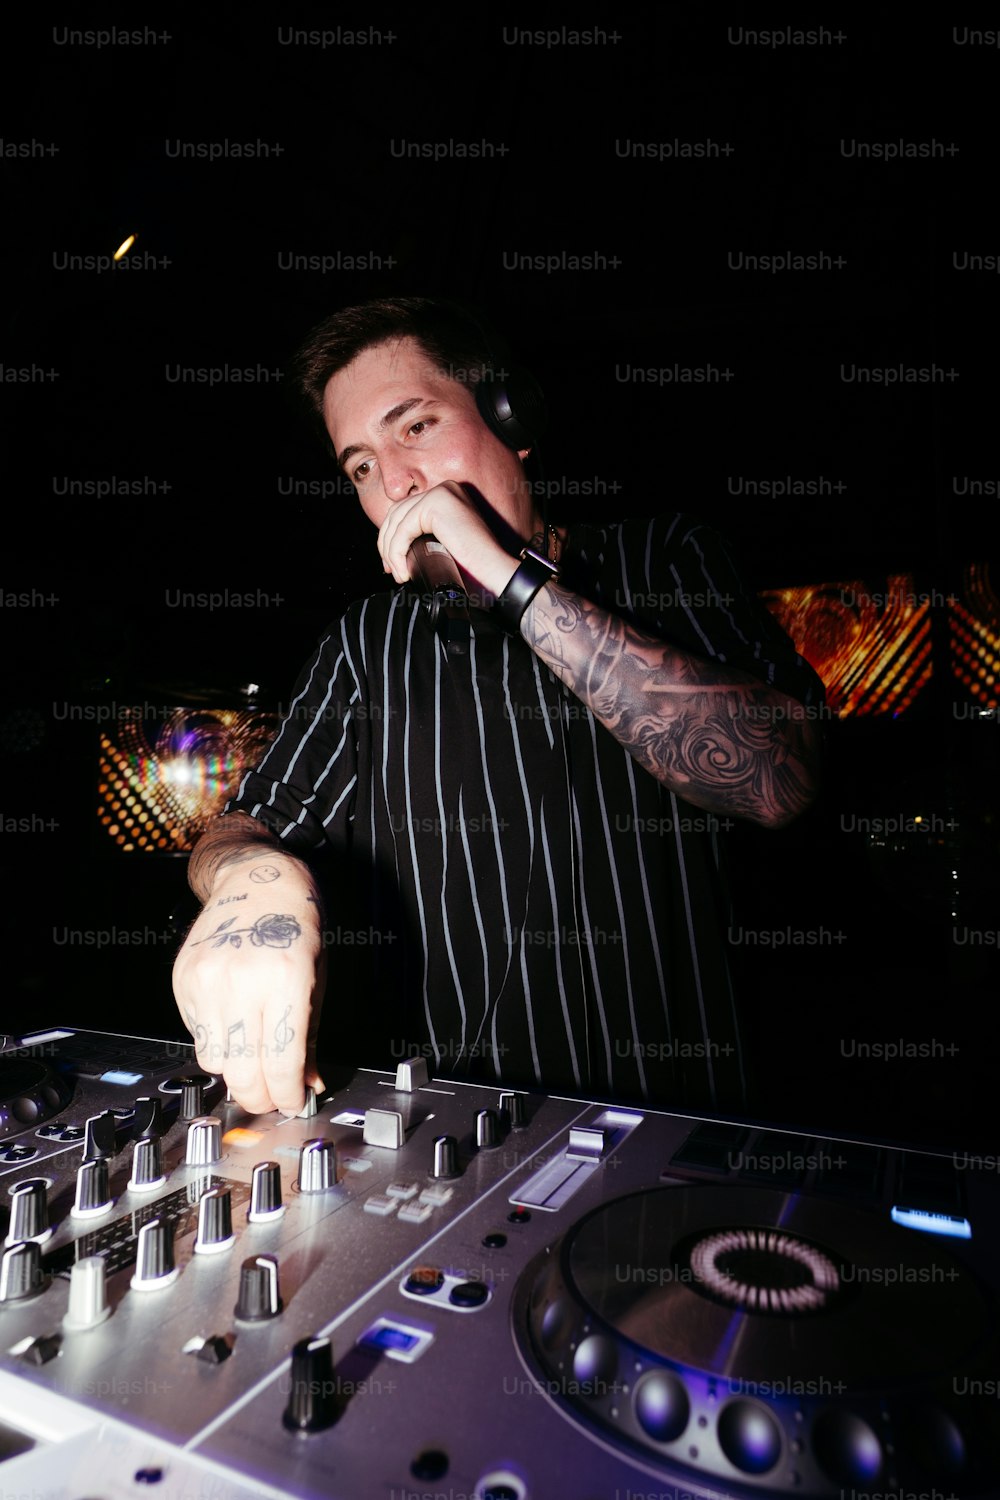 Un hombre con una camisa de rayas blancas y negras está tocando un DJ Set